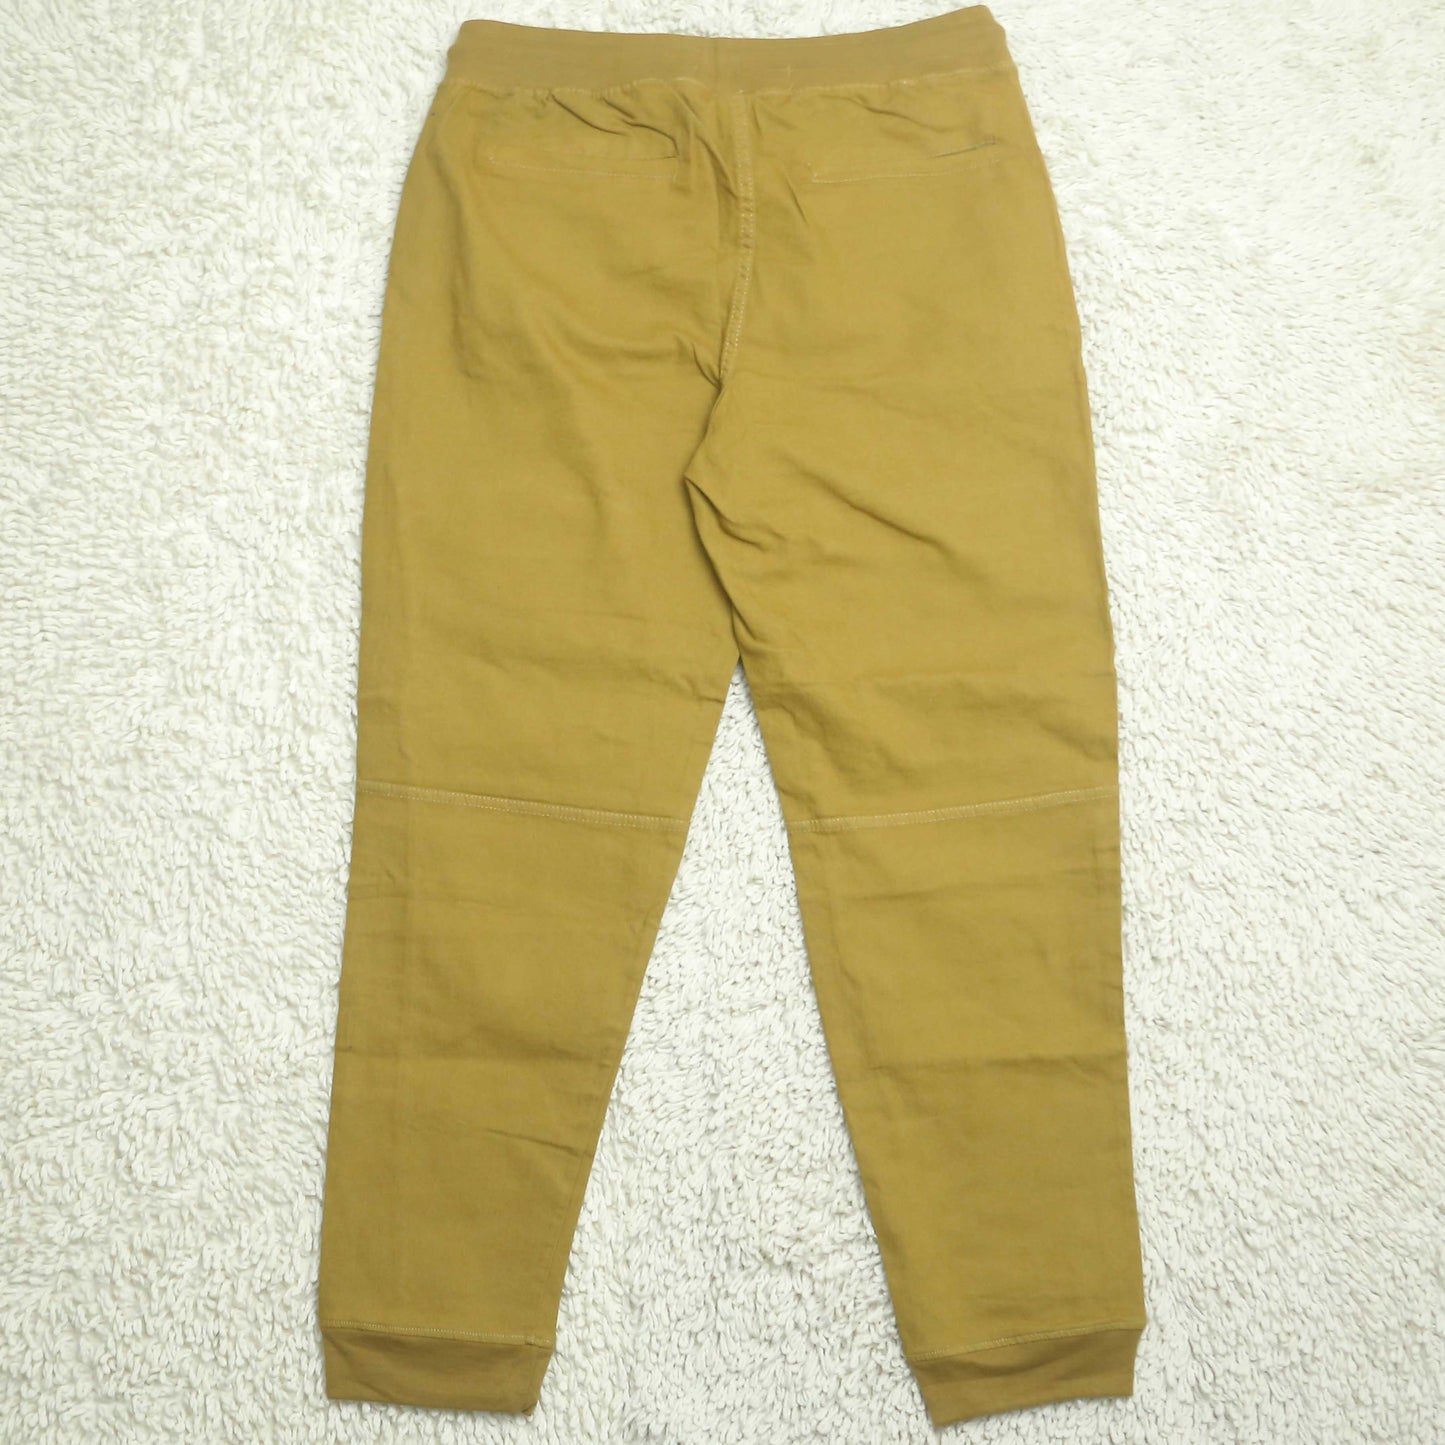 Ss - Six Pocket Cargo Jogger Pants (Men) - Khaki